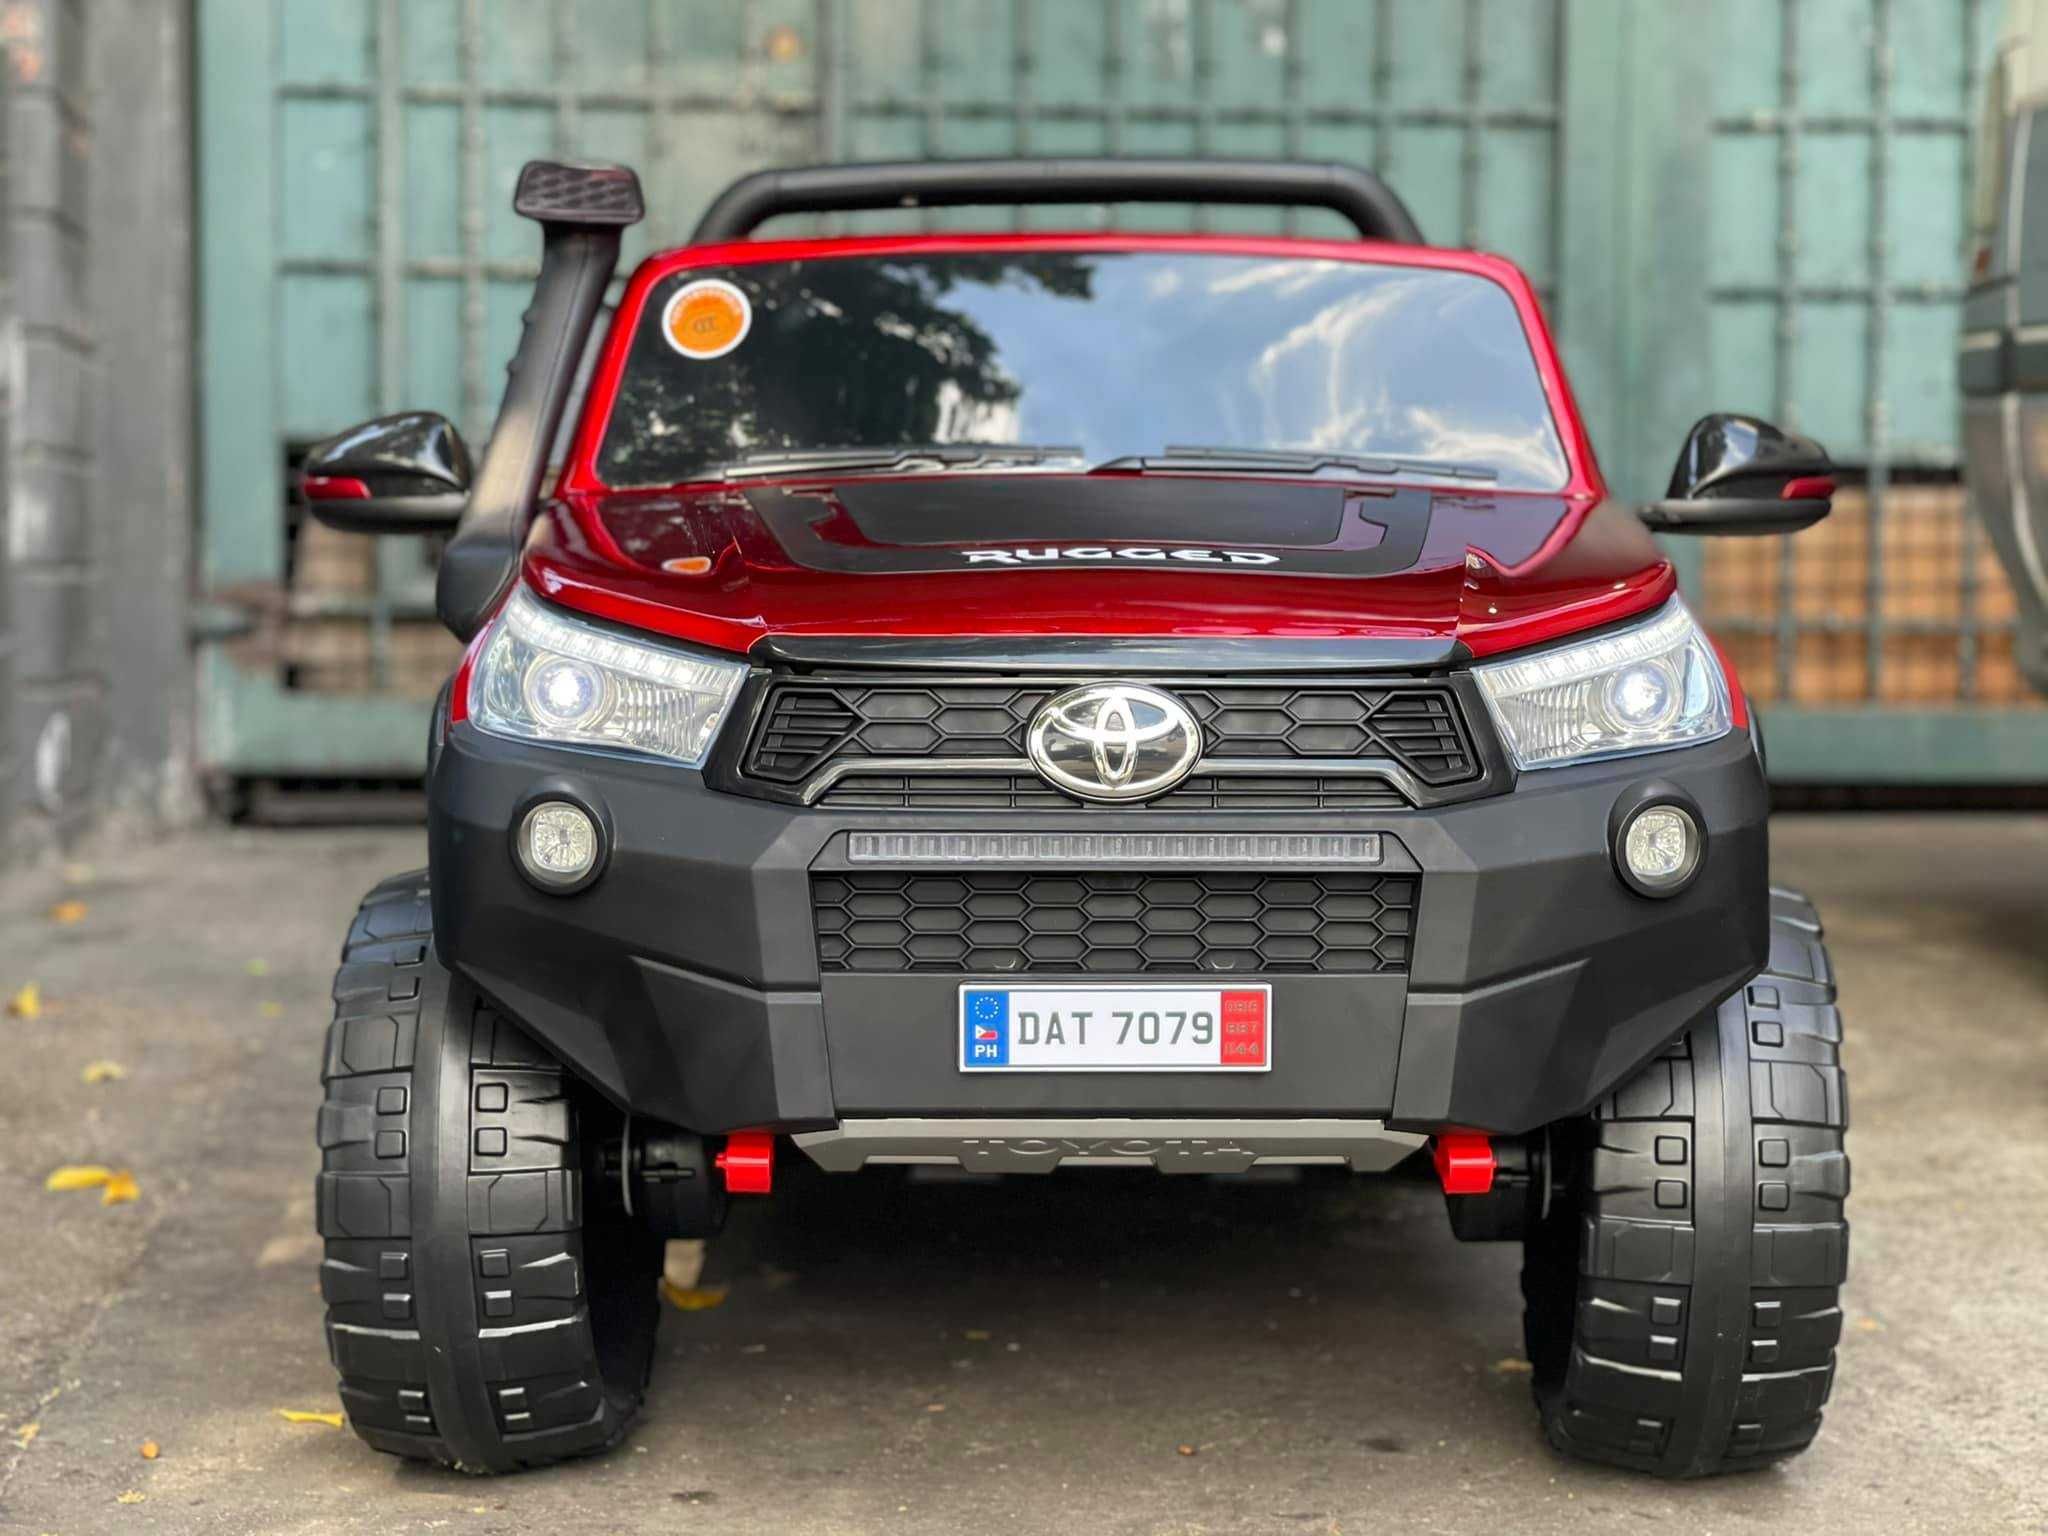 Masinuta electrica pentru 2 copii Toyota Hilux 4WD RuggedX 2021 #RED